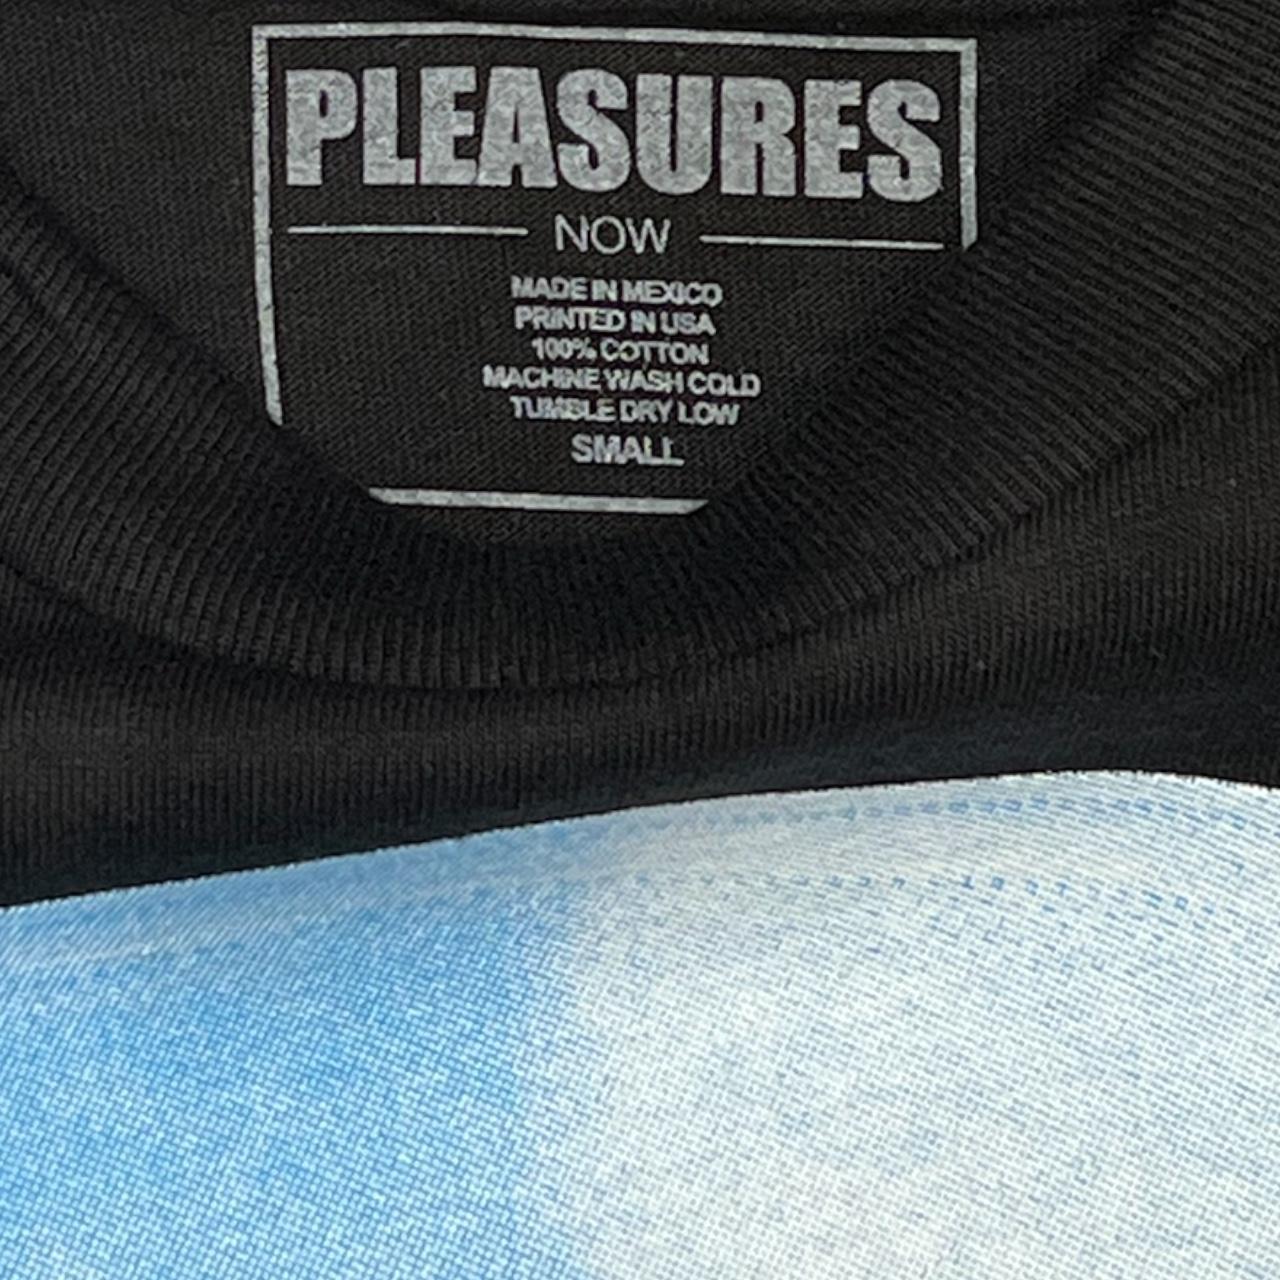 Pleasures Men's Black and Blue T-shirt (2)